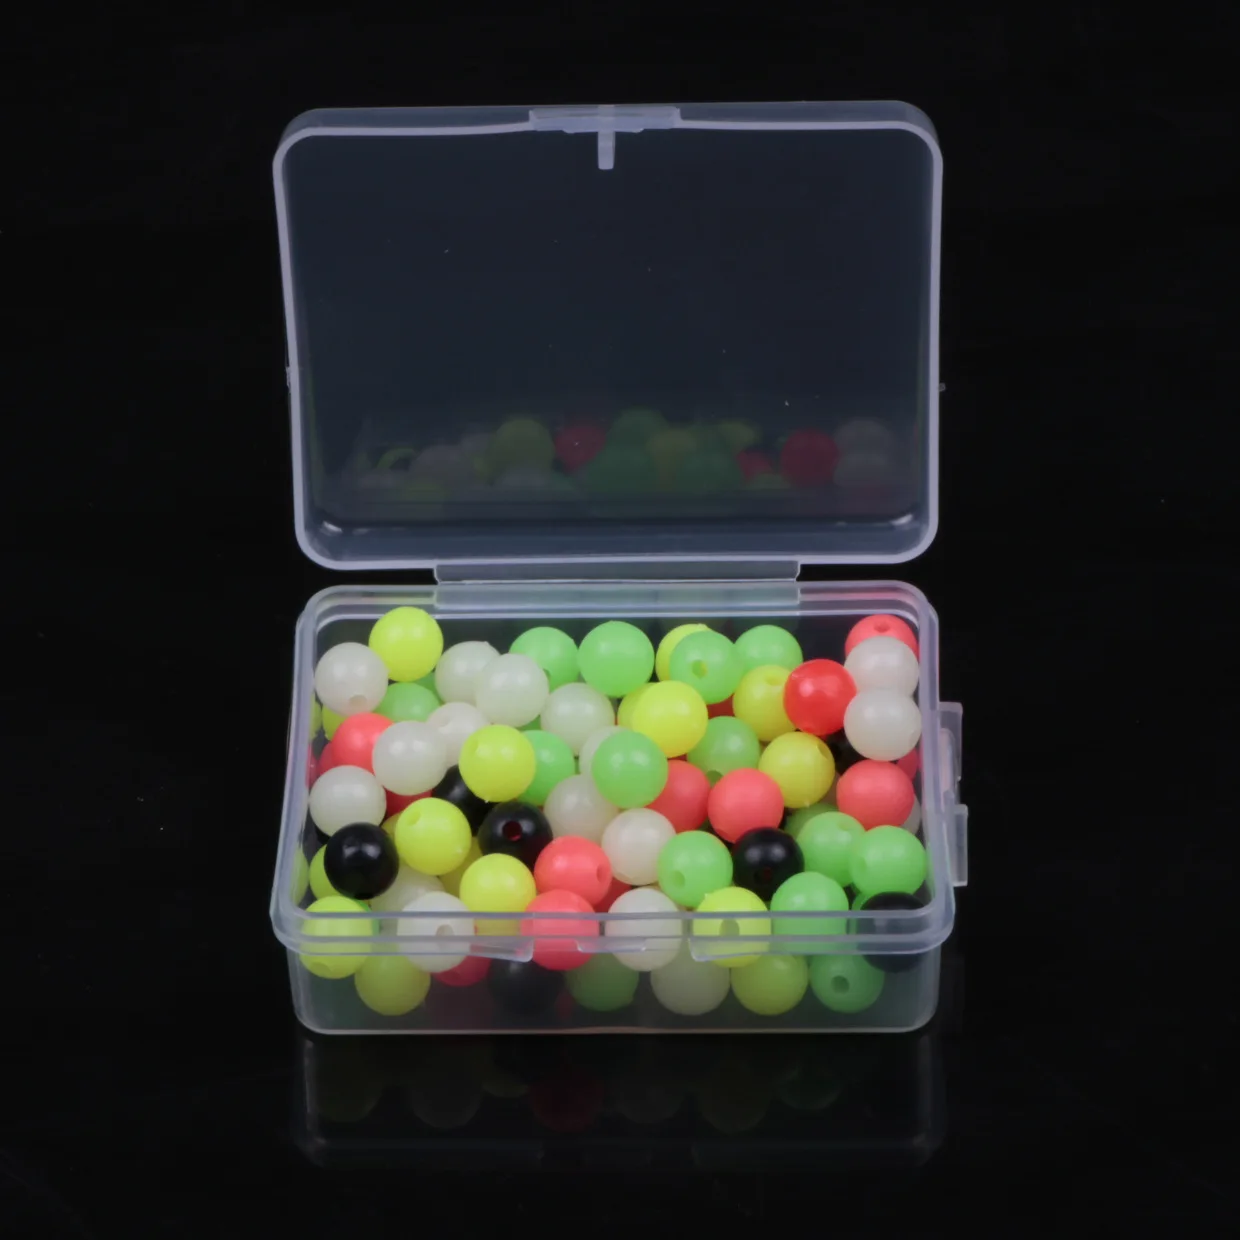 100 шт./лот, рыболовные плавающие бусины 3-8 мм, разноцветные светящиеся шарики, космические бобы, круглые плавающие шарики, приманка, пластиковая приманка